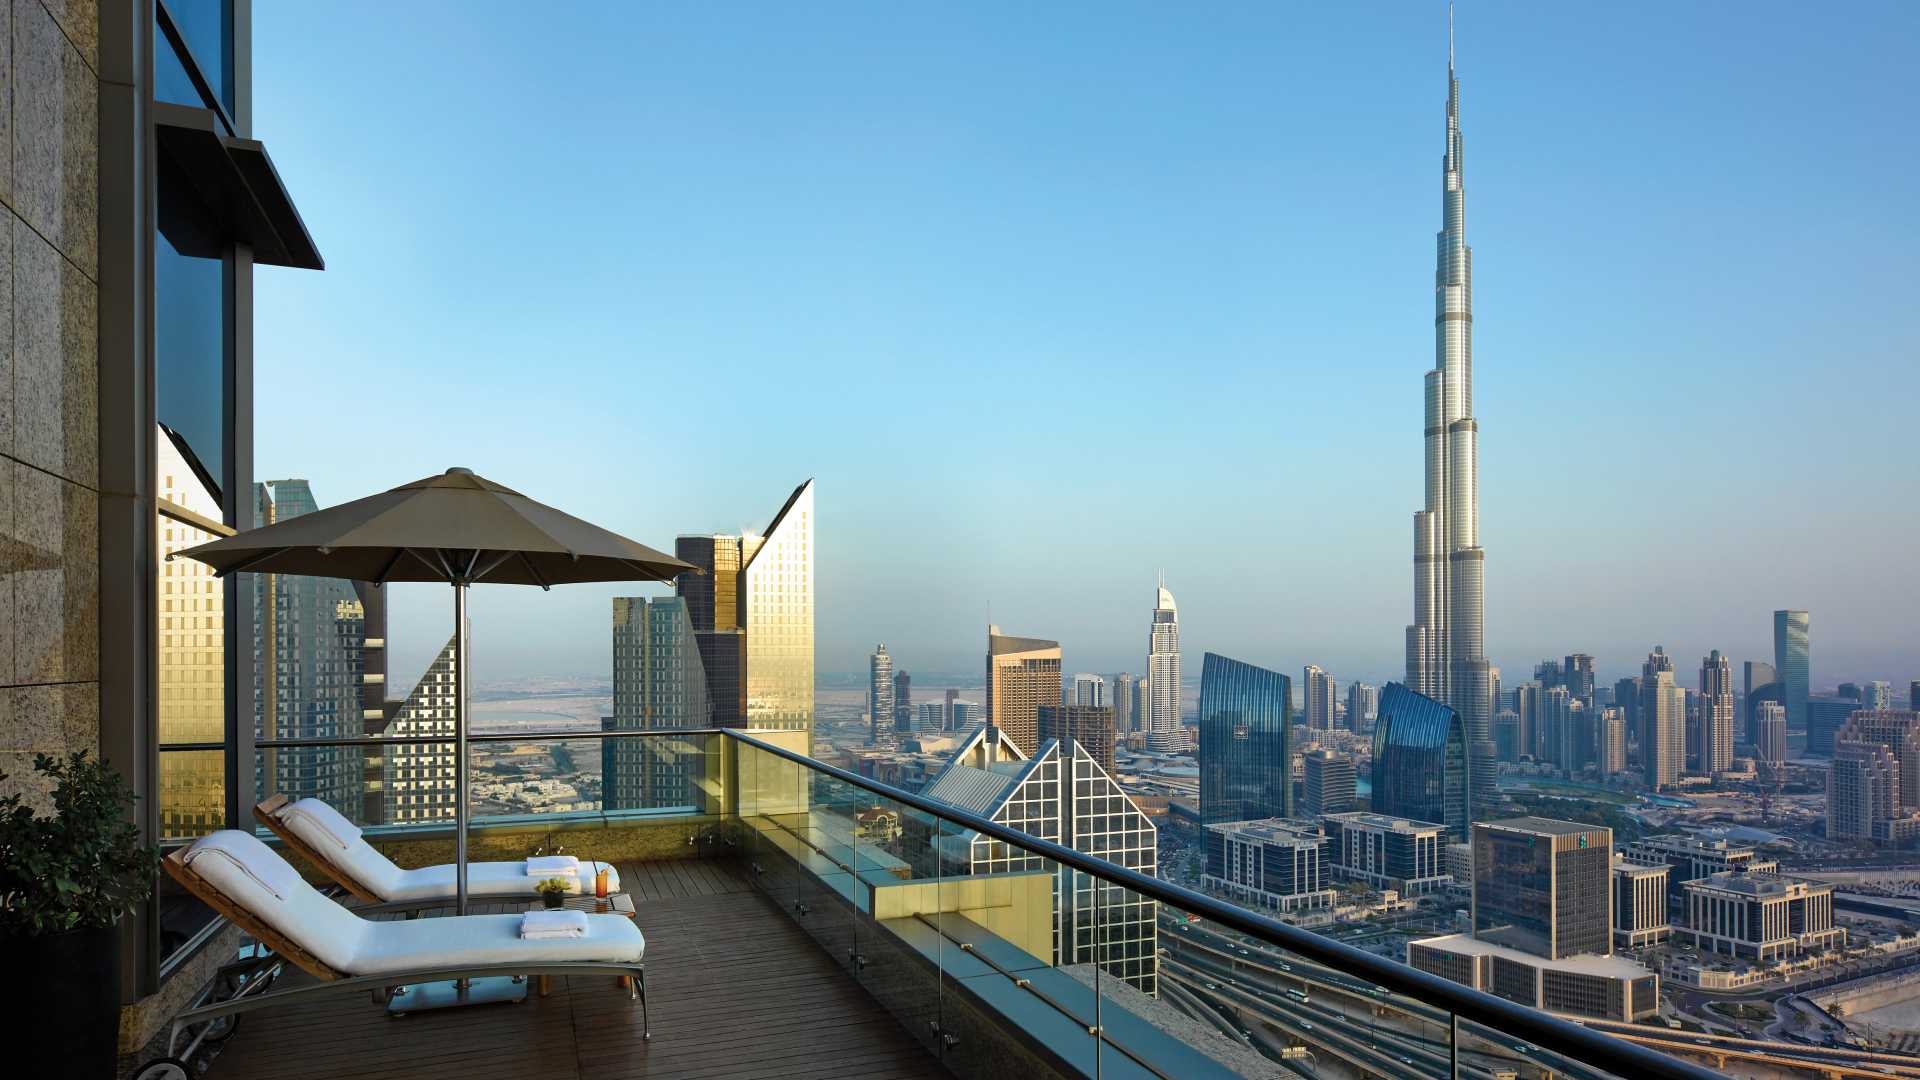 SHANGRI-LA HOTEL DUBAI - Luxury Lifestyle Awards